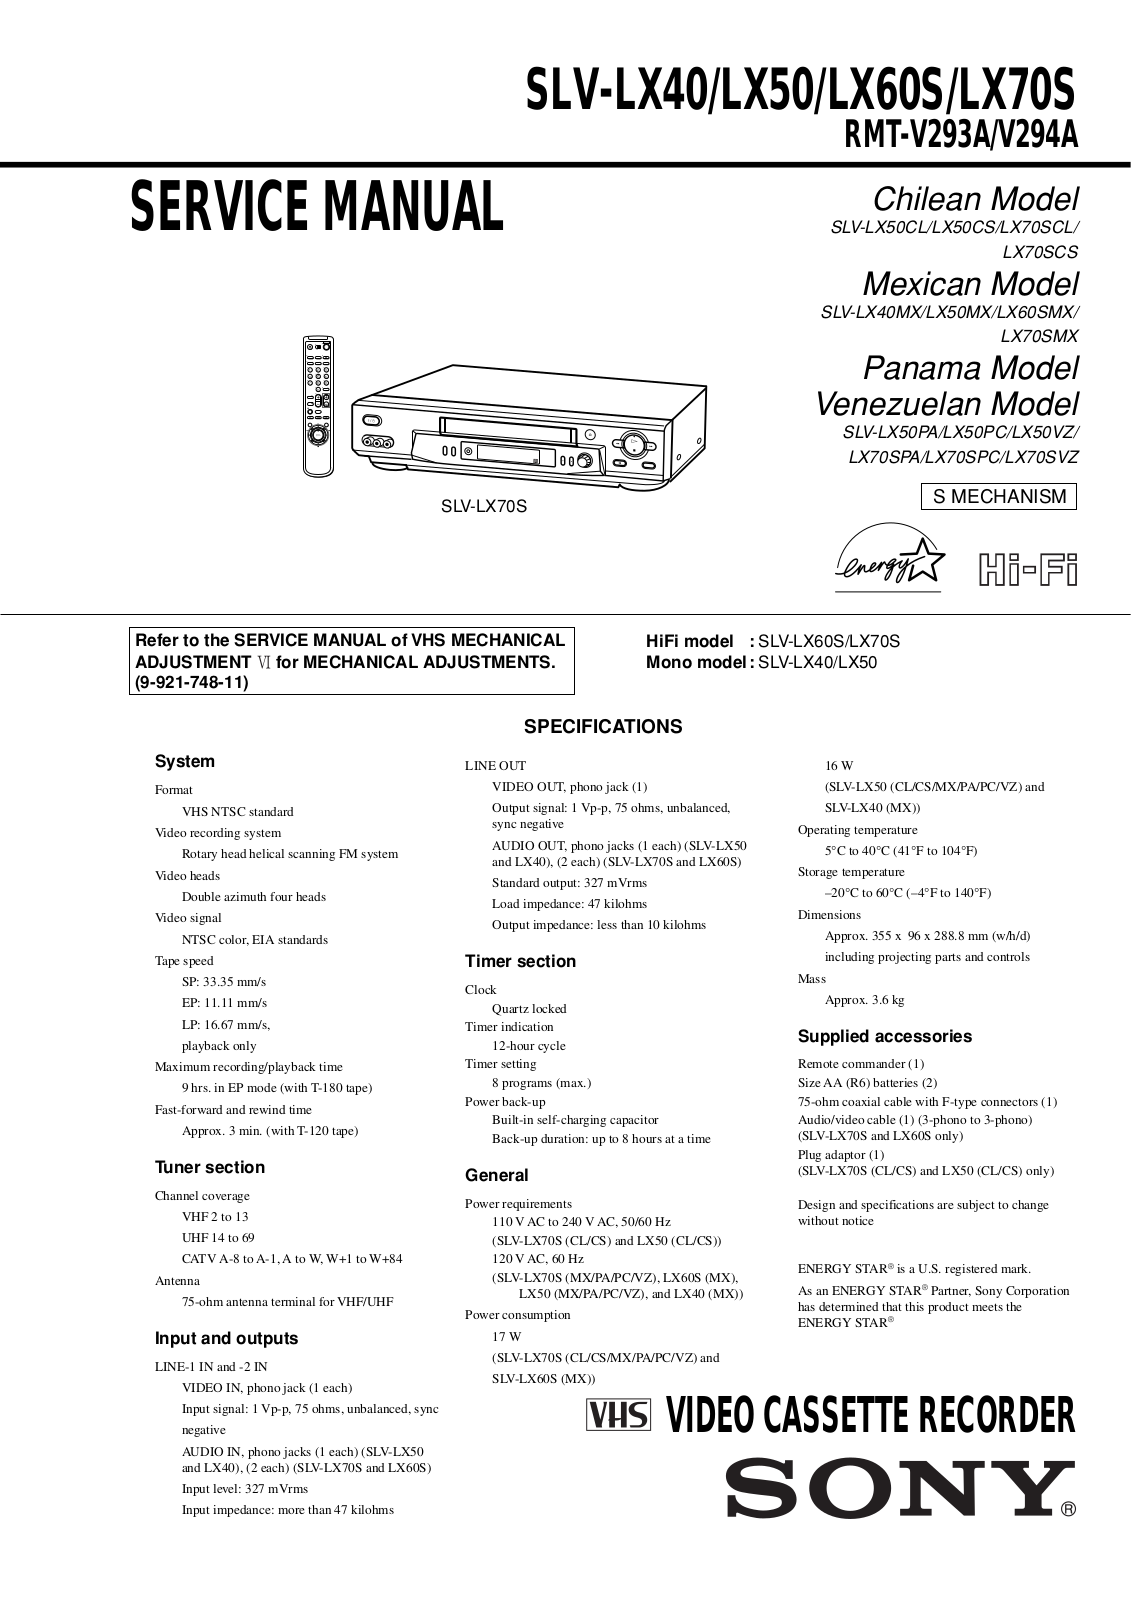 SONY SLV-LX40, SLV-LX50, SLV-LX60 Service Manual